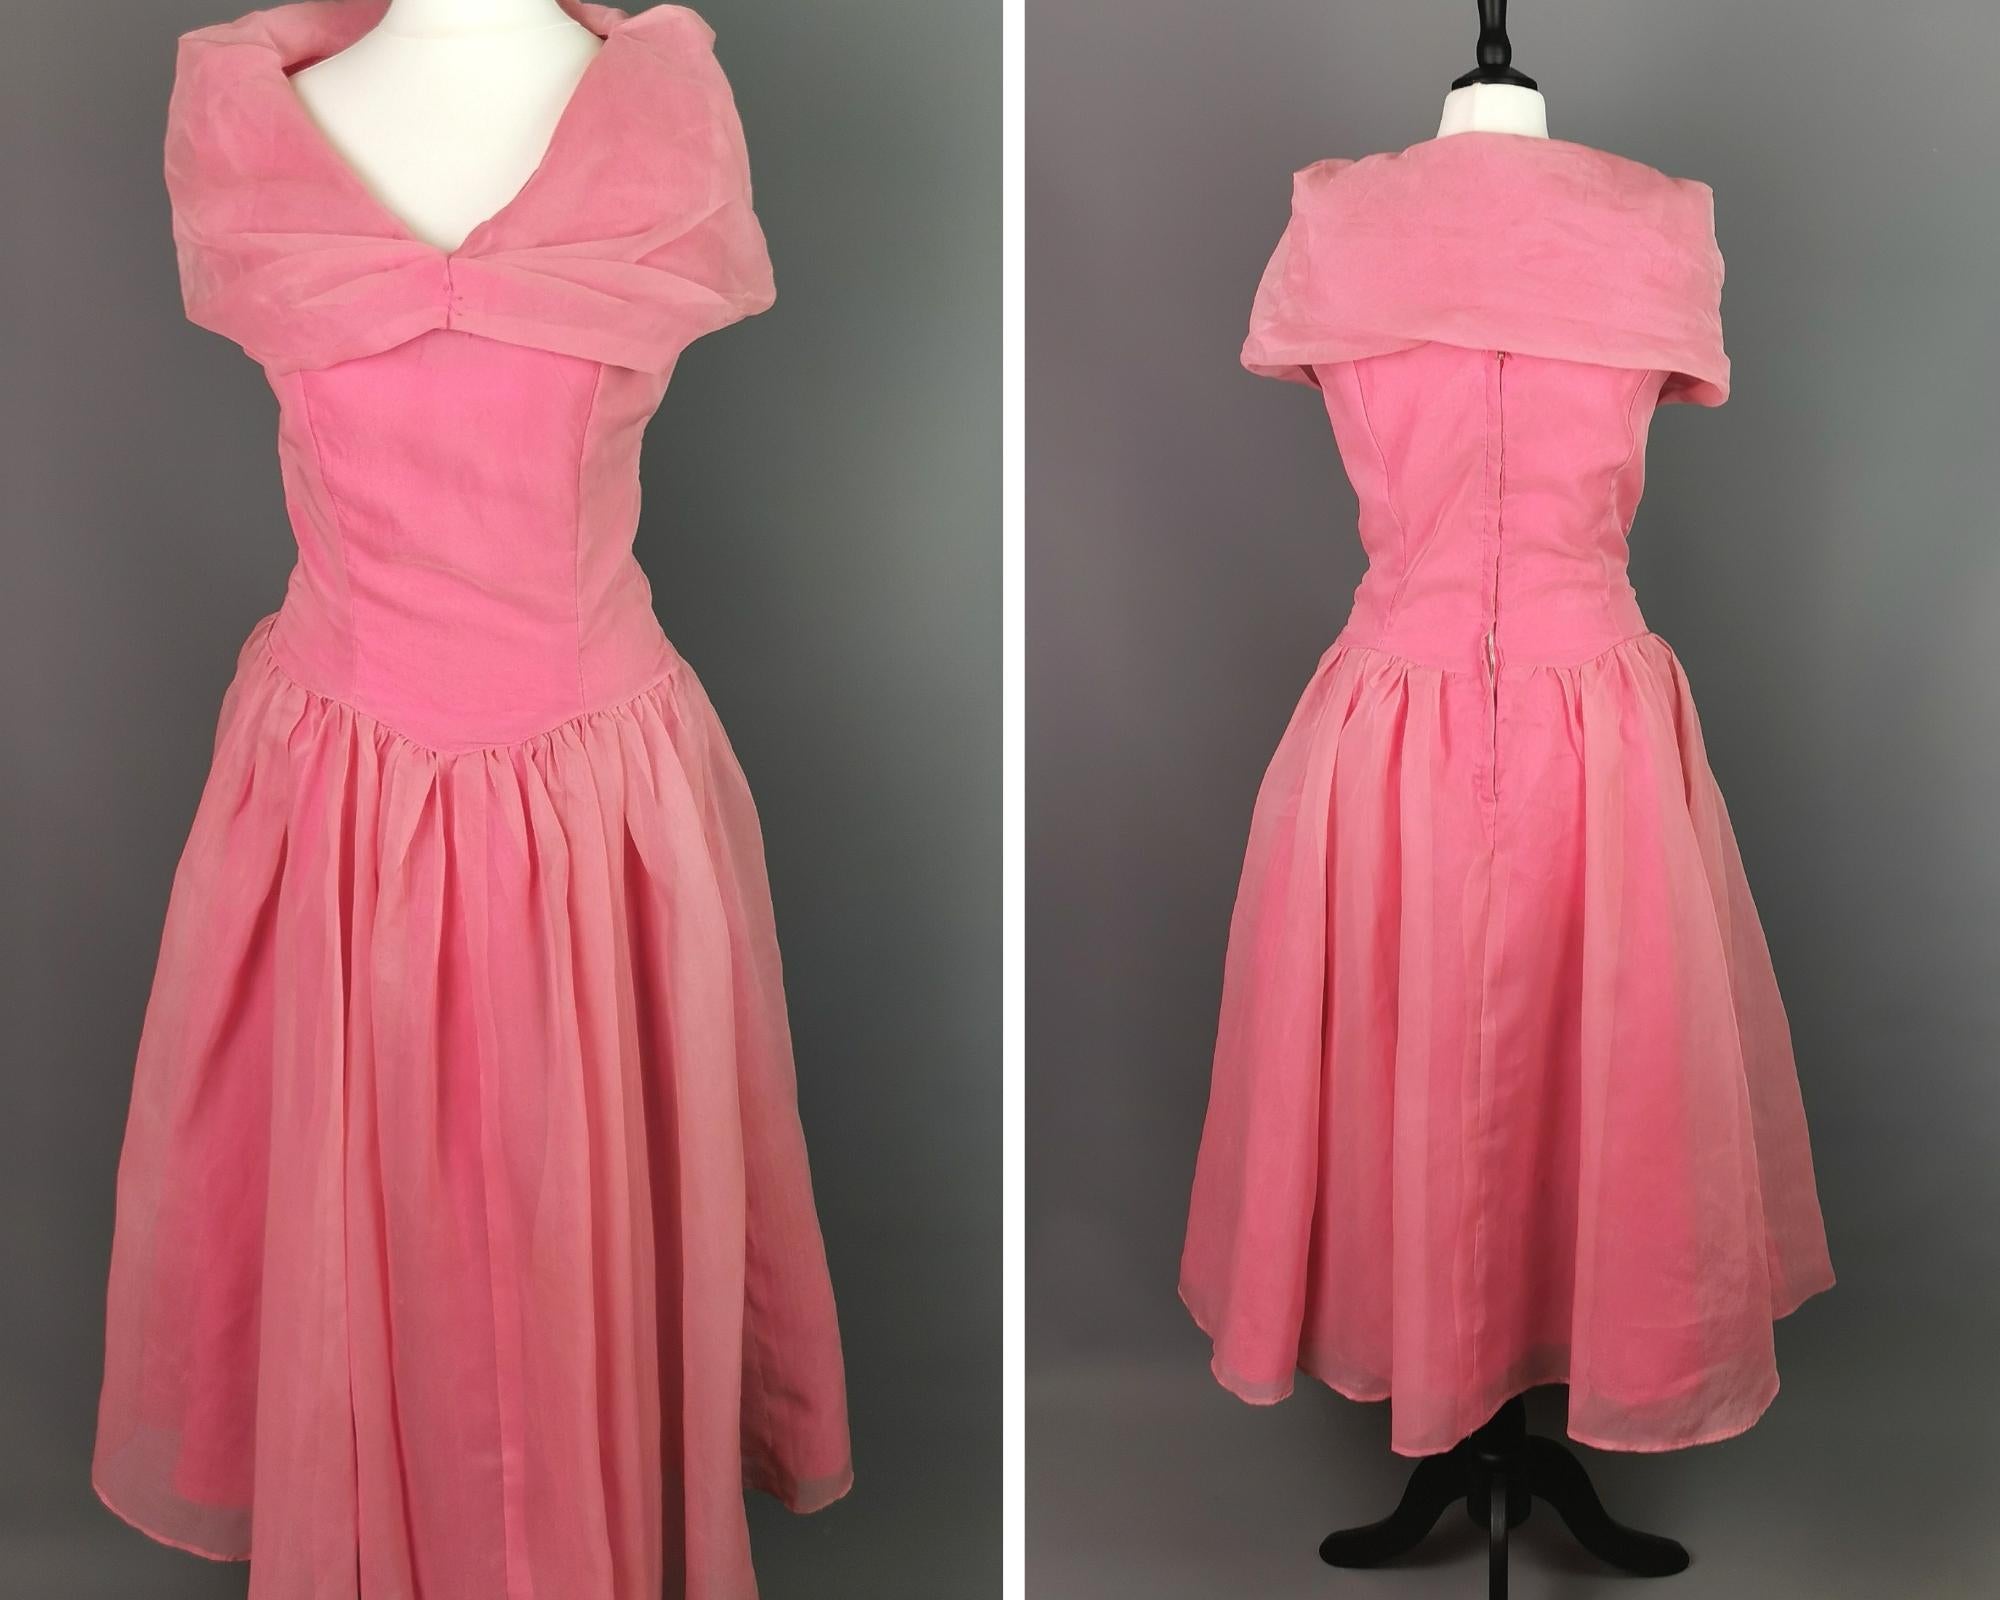 Magnifique robe de soirée vintage des années 1950 à jupe complète, de couleur rose, avec une superposition de mousseline de soie et d'organza.

La robe comporte plusieurs couches, y compris le jupon original qui donne à la jupe beaucoup de volume.